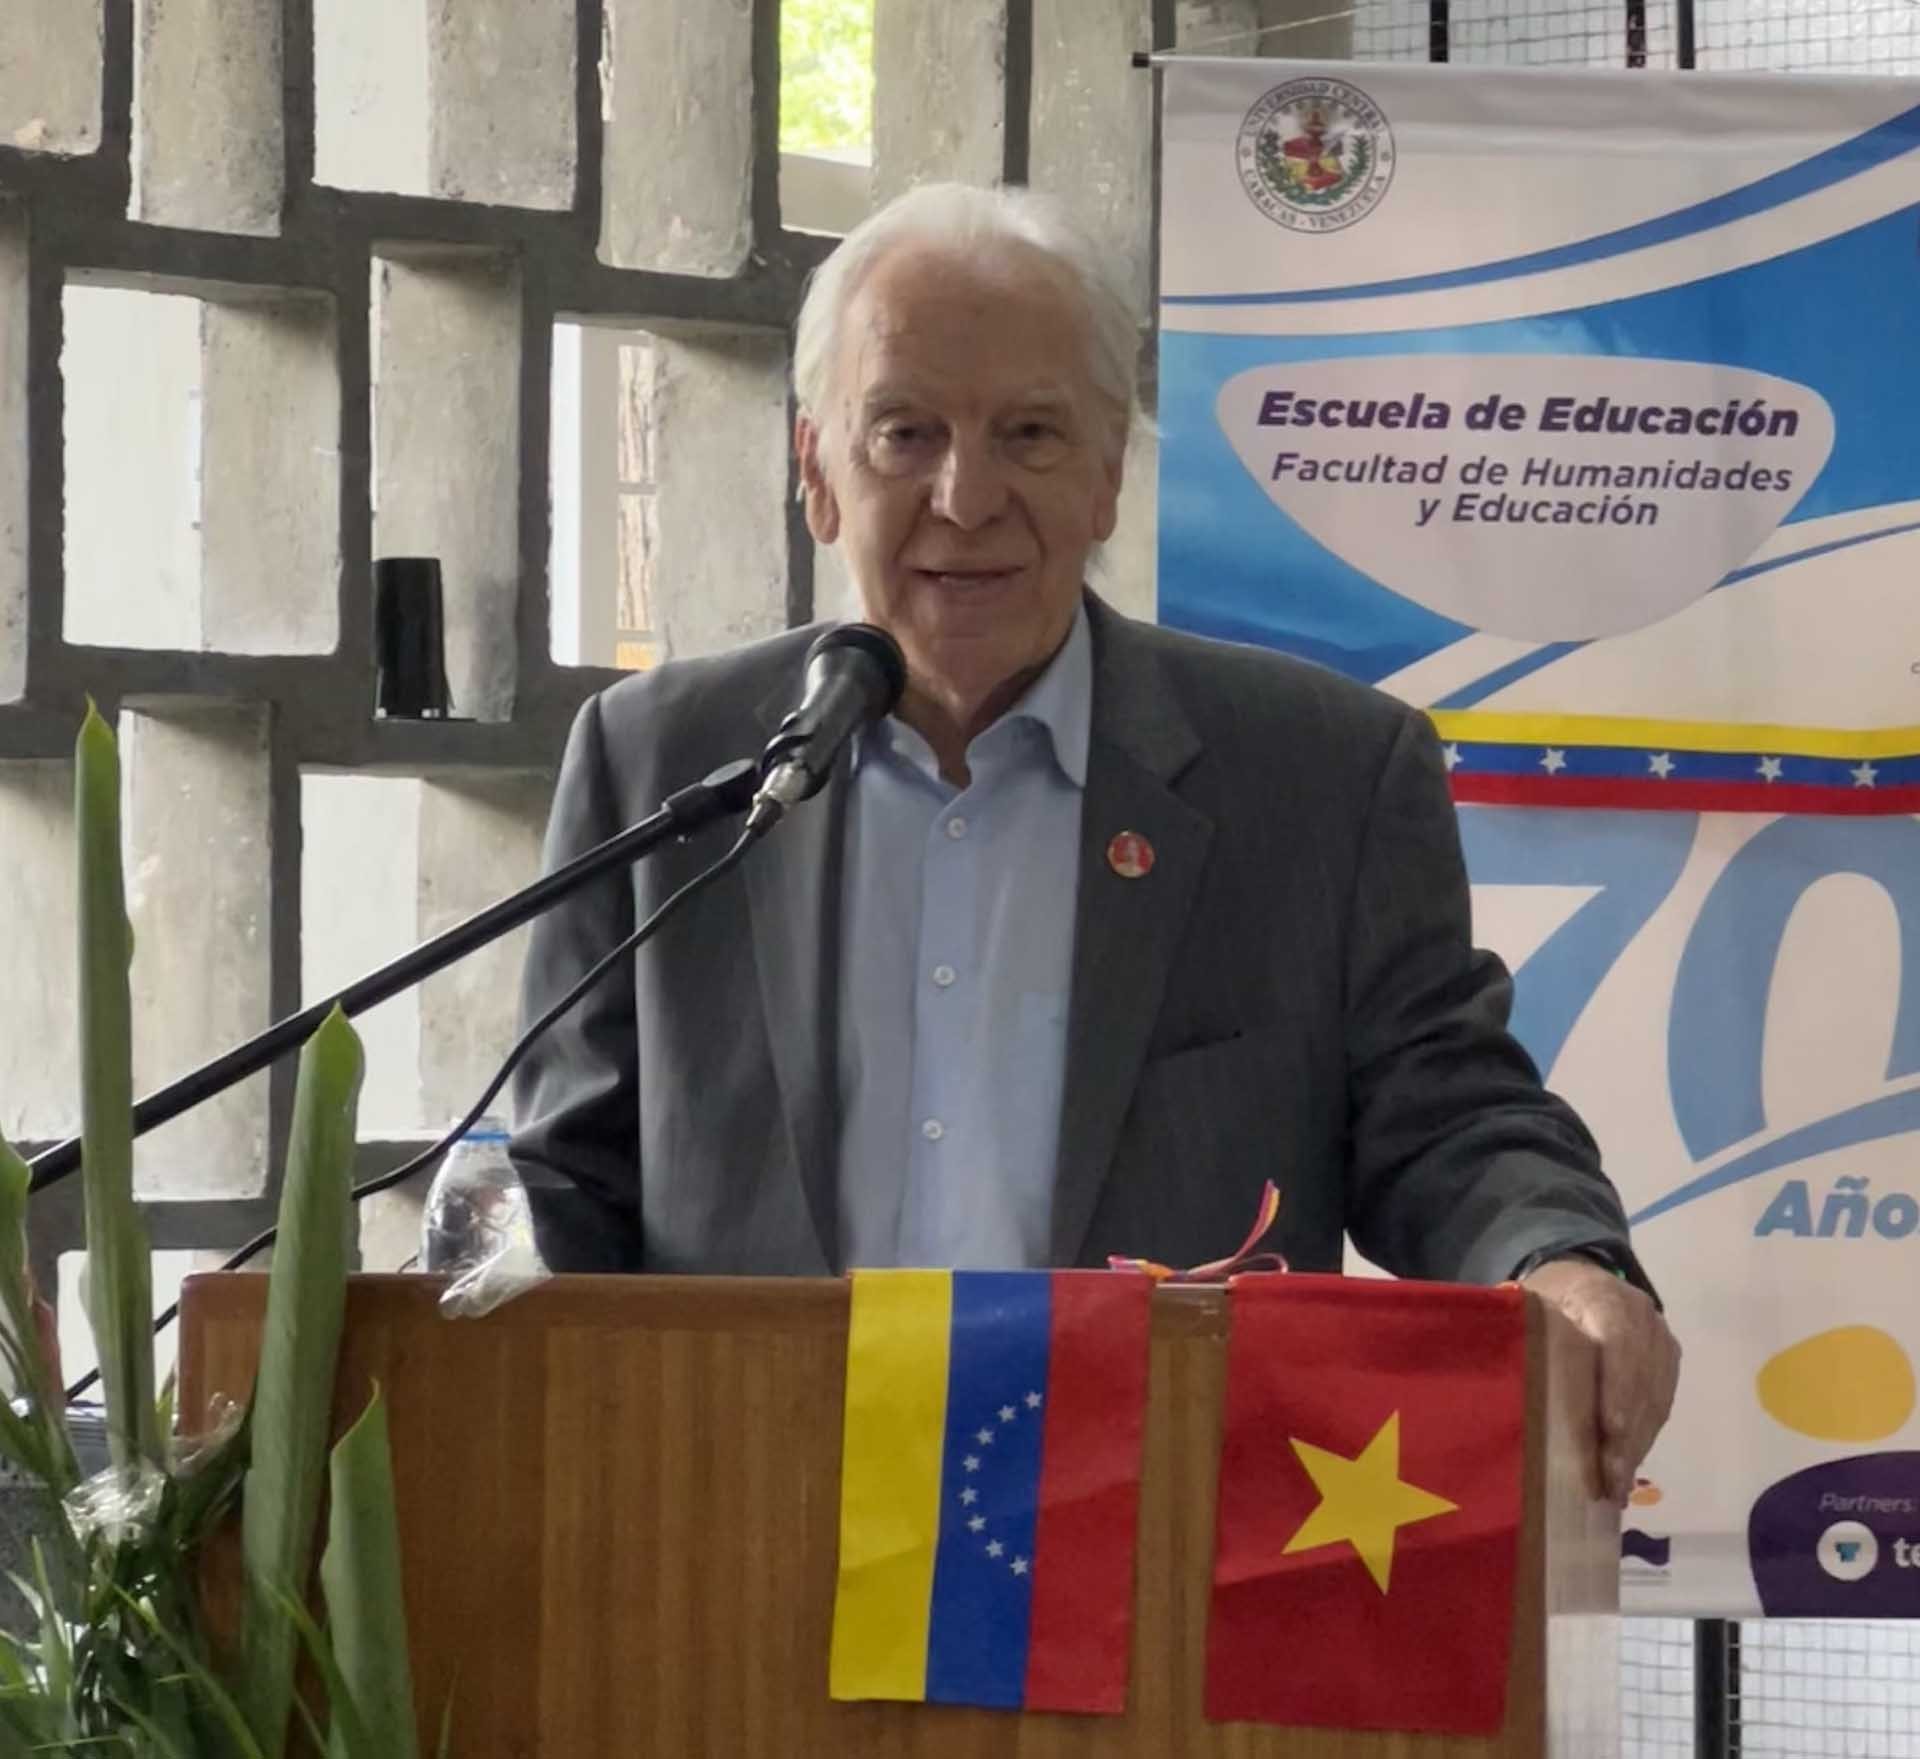 Học giả Venezuela ca ngợi Chủ tịch Hồ Chí Minh và Đảng Cộng sản Việt Nam